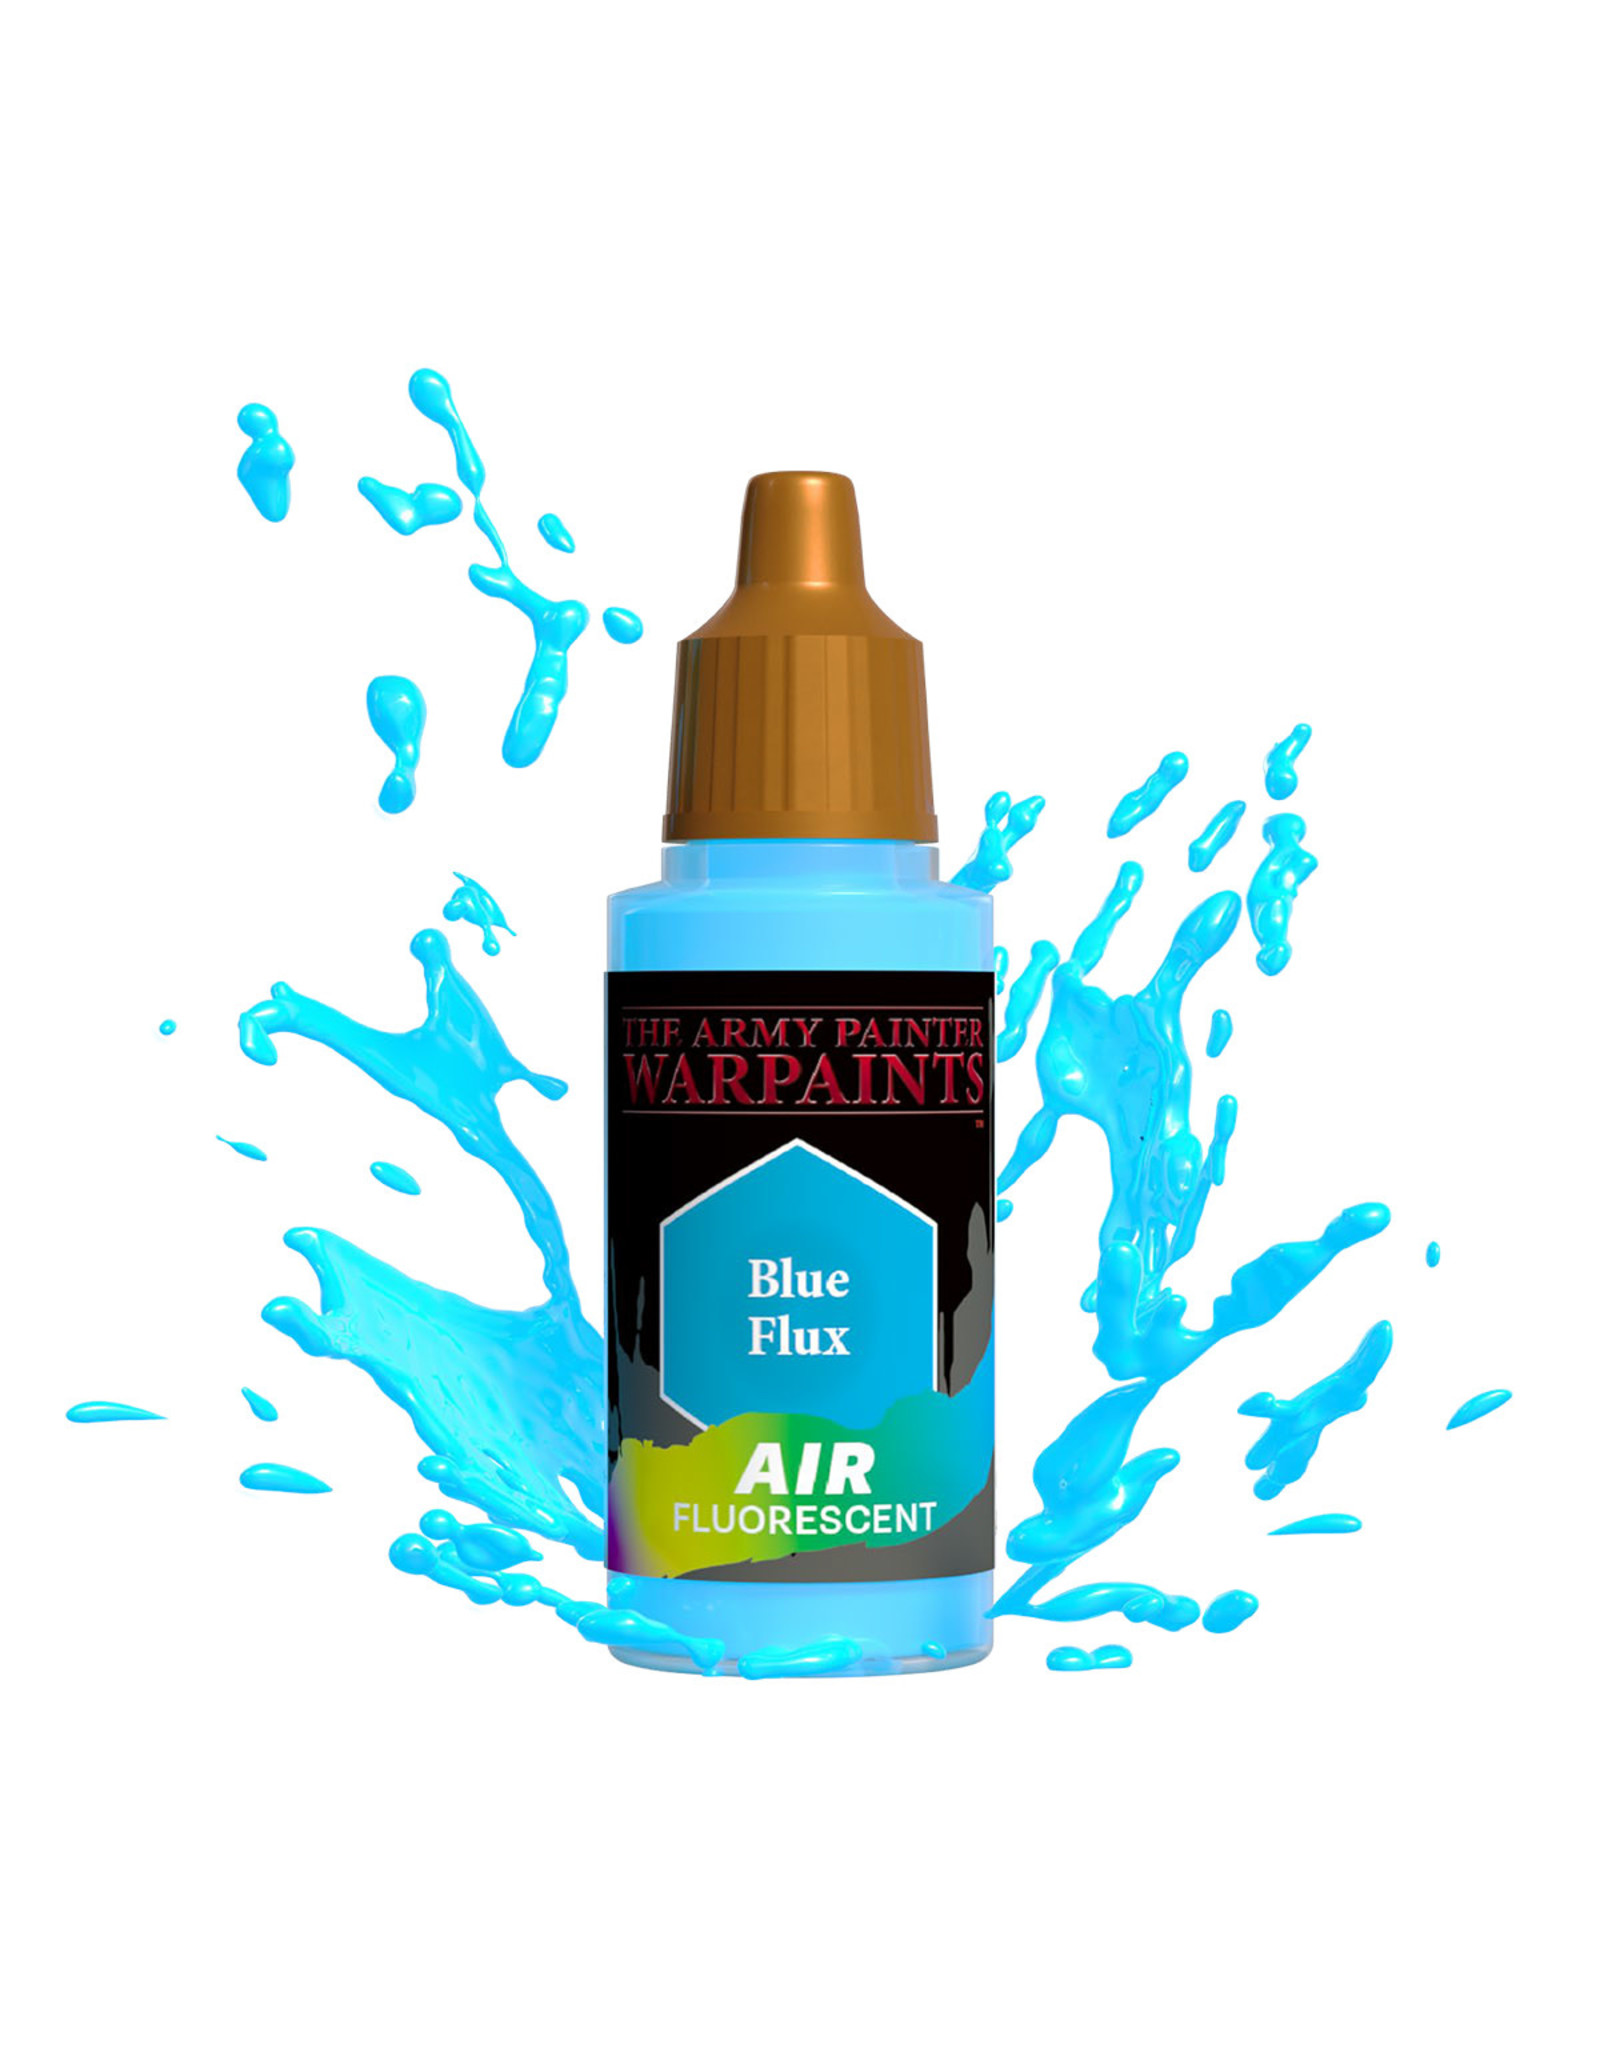 The Army Painter Warpaints Air Fluorescent: Blue Flux